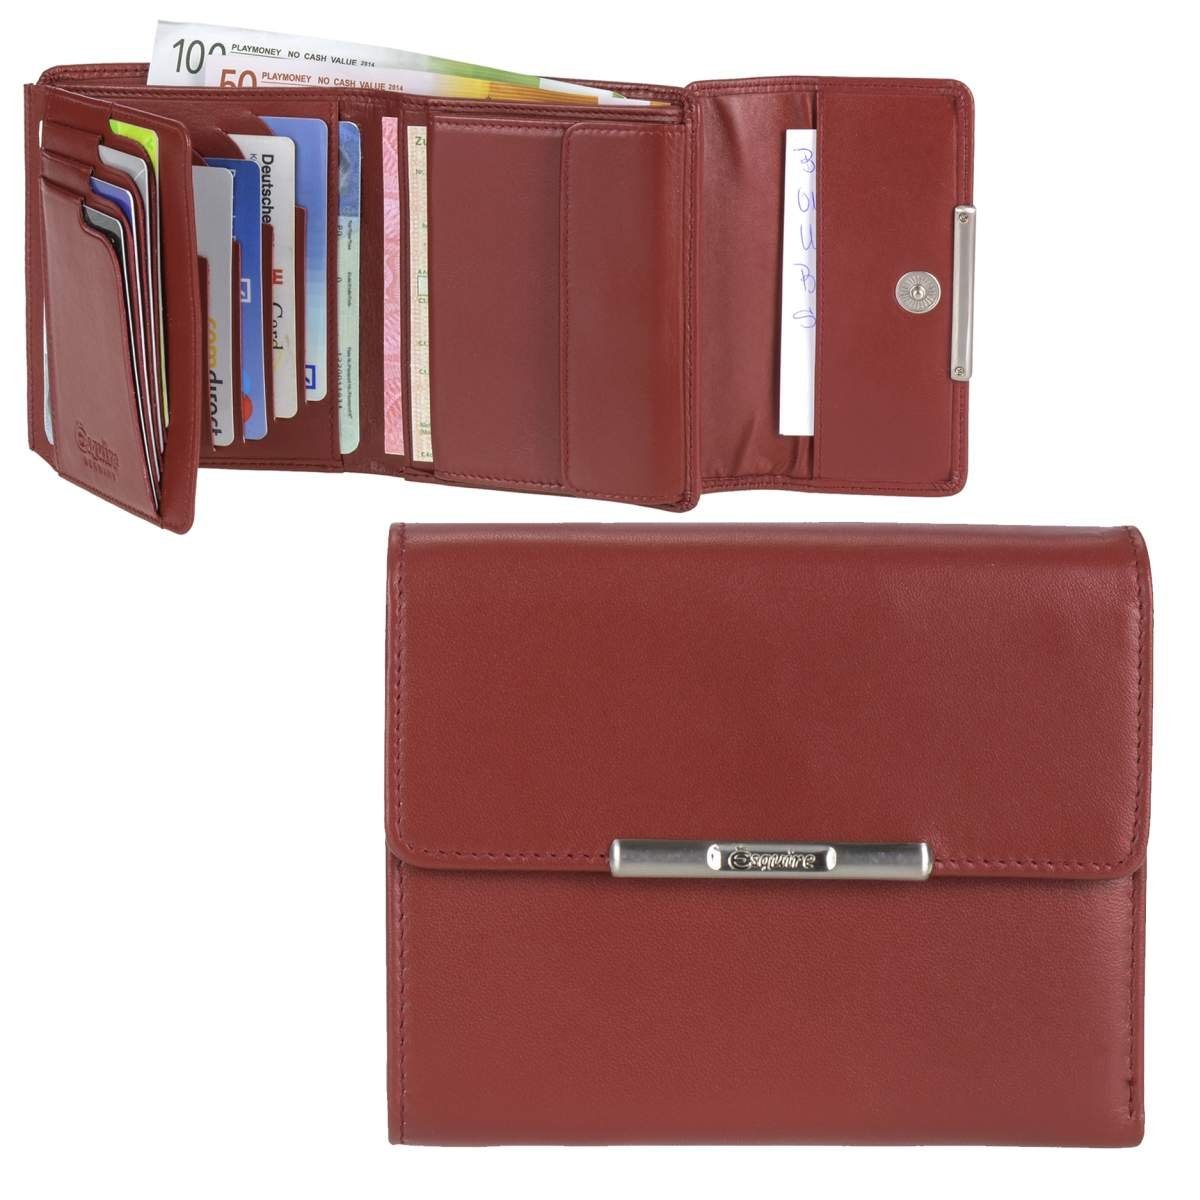 Esquire Geldbörse Helena, Portemonnaie, mit RFID Schutz gegen Datendiebstahl, 12 Kartenfächer rot | Geldbörsen